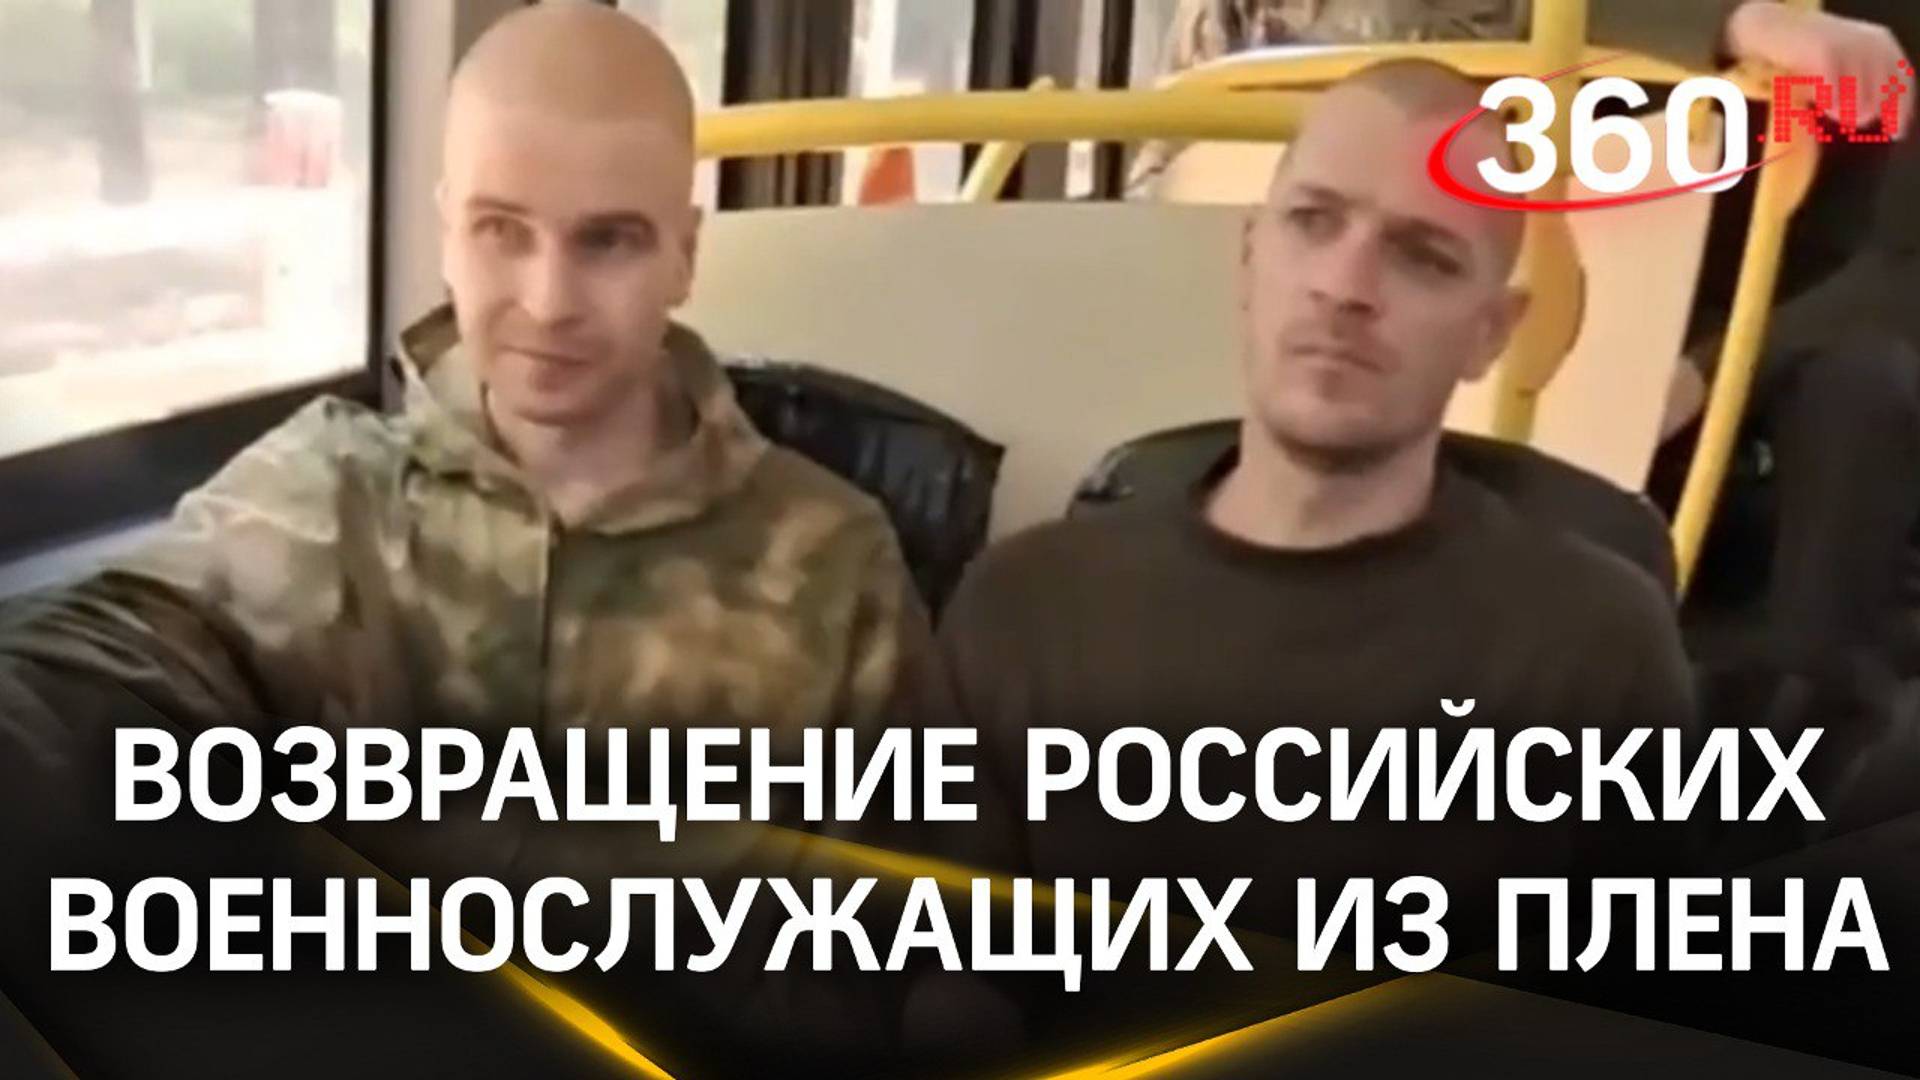 «Доча, я в России. Скоро буду дома!», – 95 российских бойцов вернулось из украинского плена